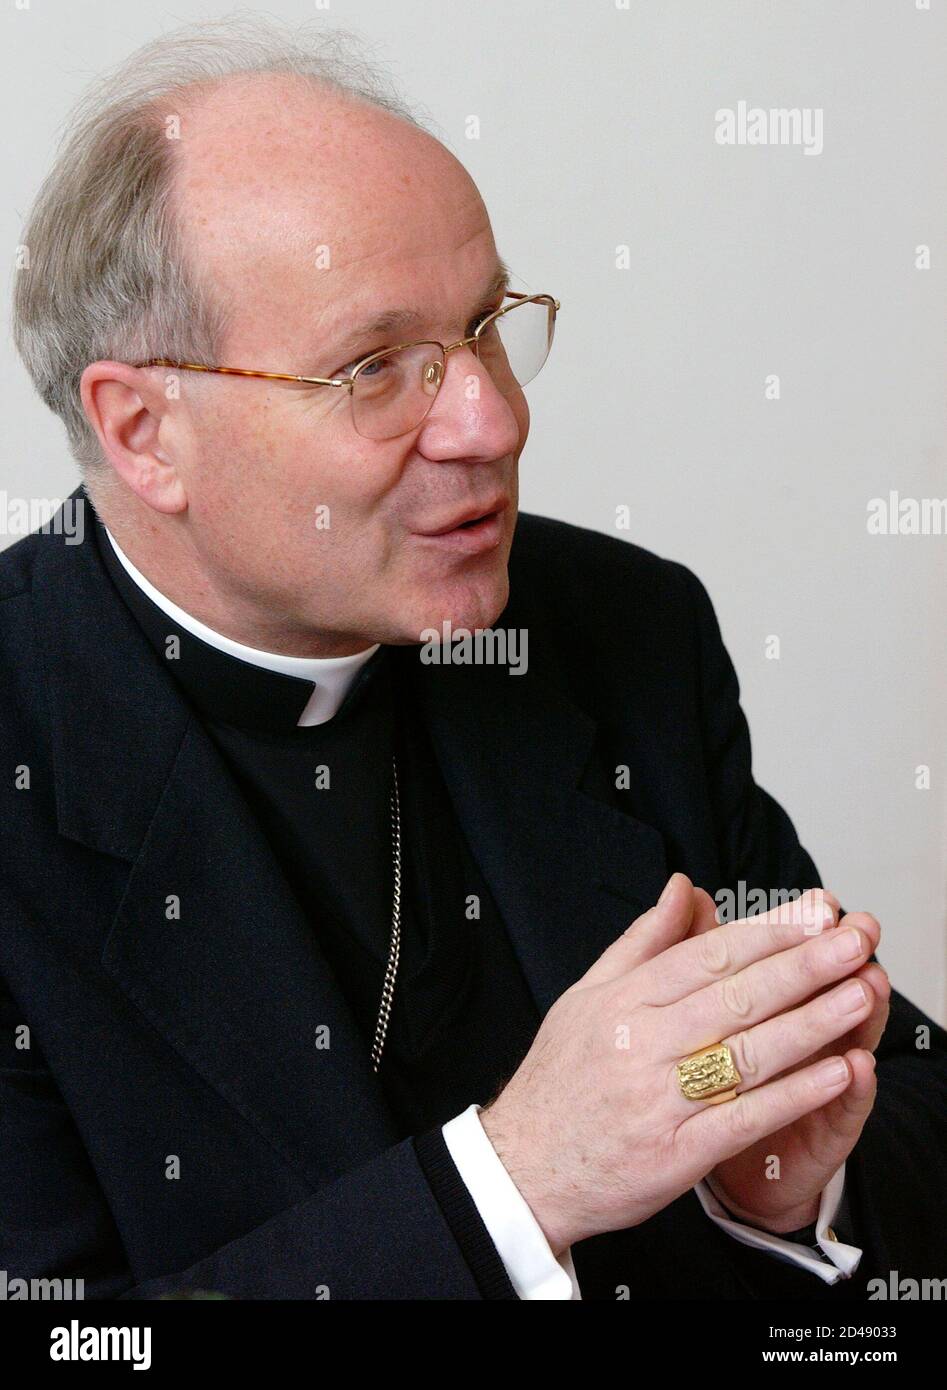 Kardinal Christoph Schoenborn gab heute, am 11. April 2003, in Wien eine Pressekonferenz zum Abschluss der Fruehjahrssession der oesterreichischen Bischofskonferenz. REUTERS/Heinz-Peter Bader REUTERS  HP/ Stock Photo